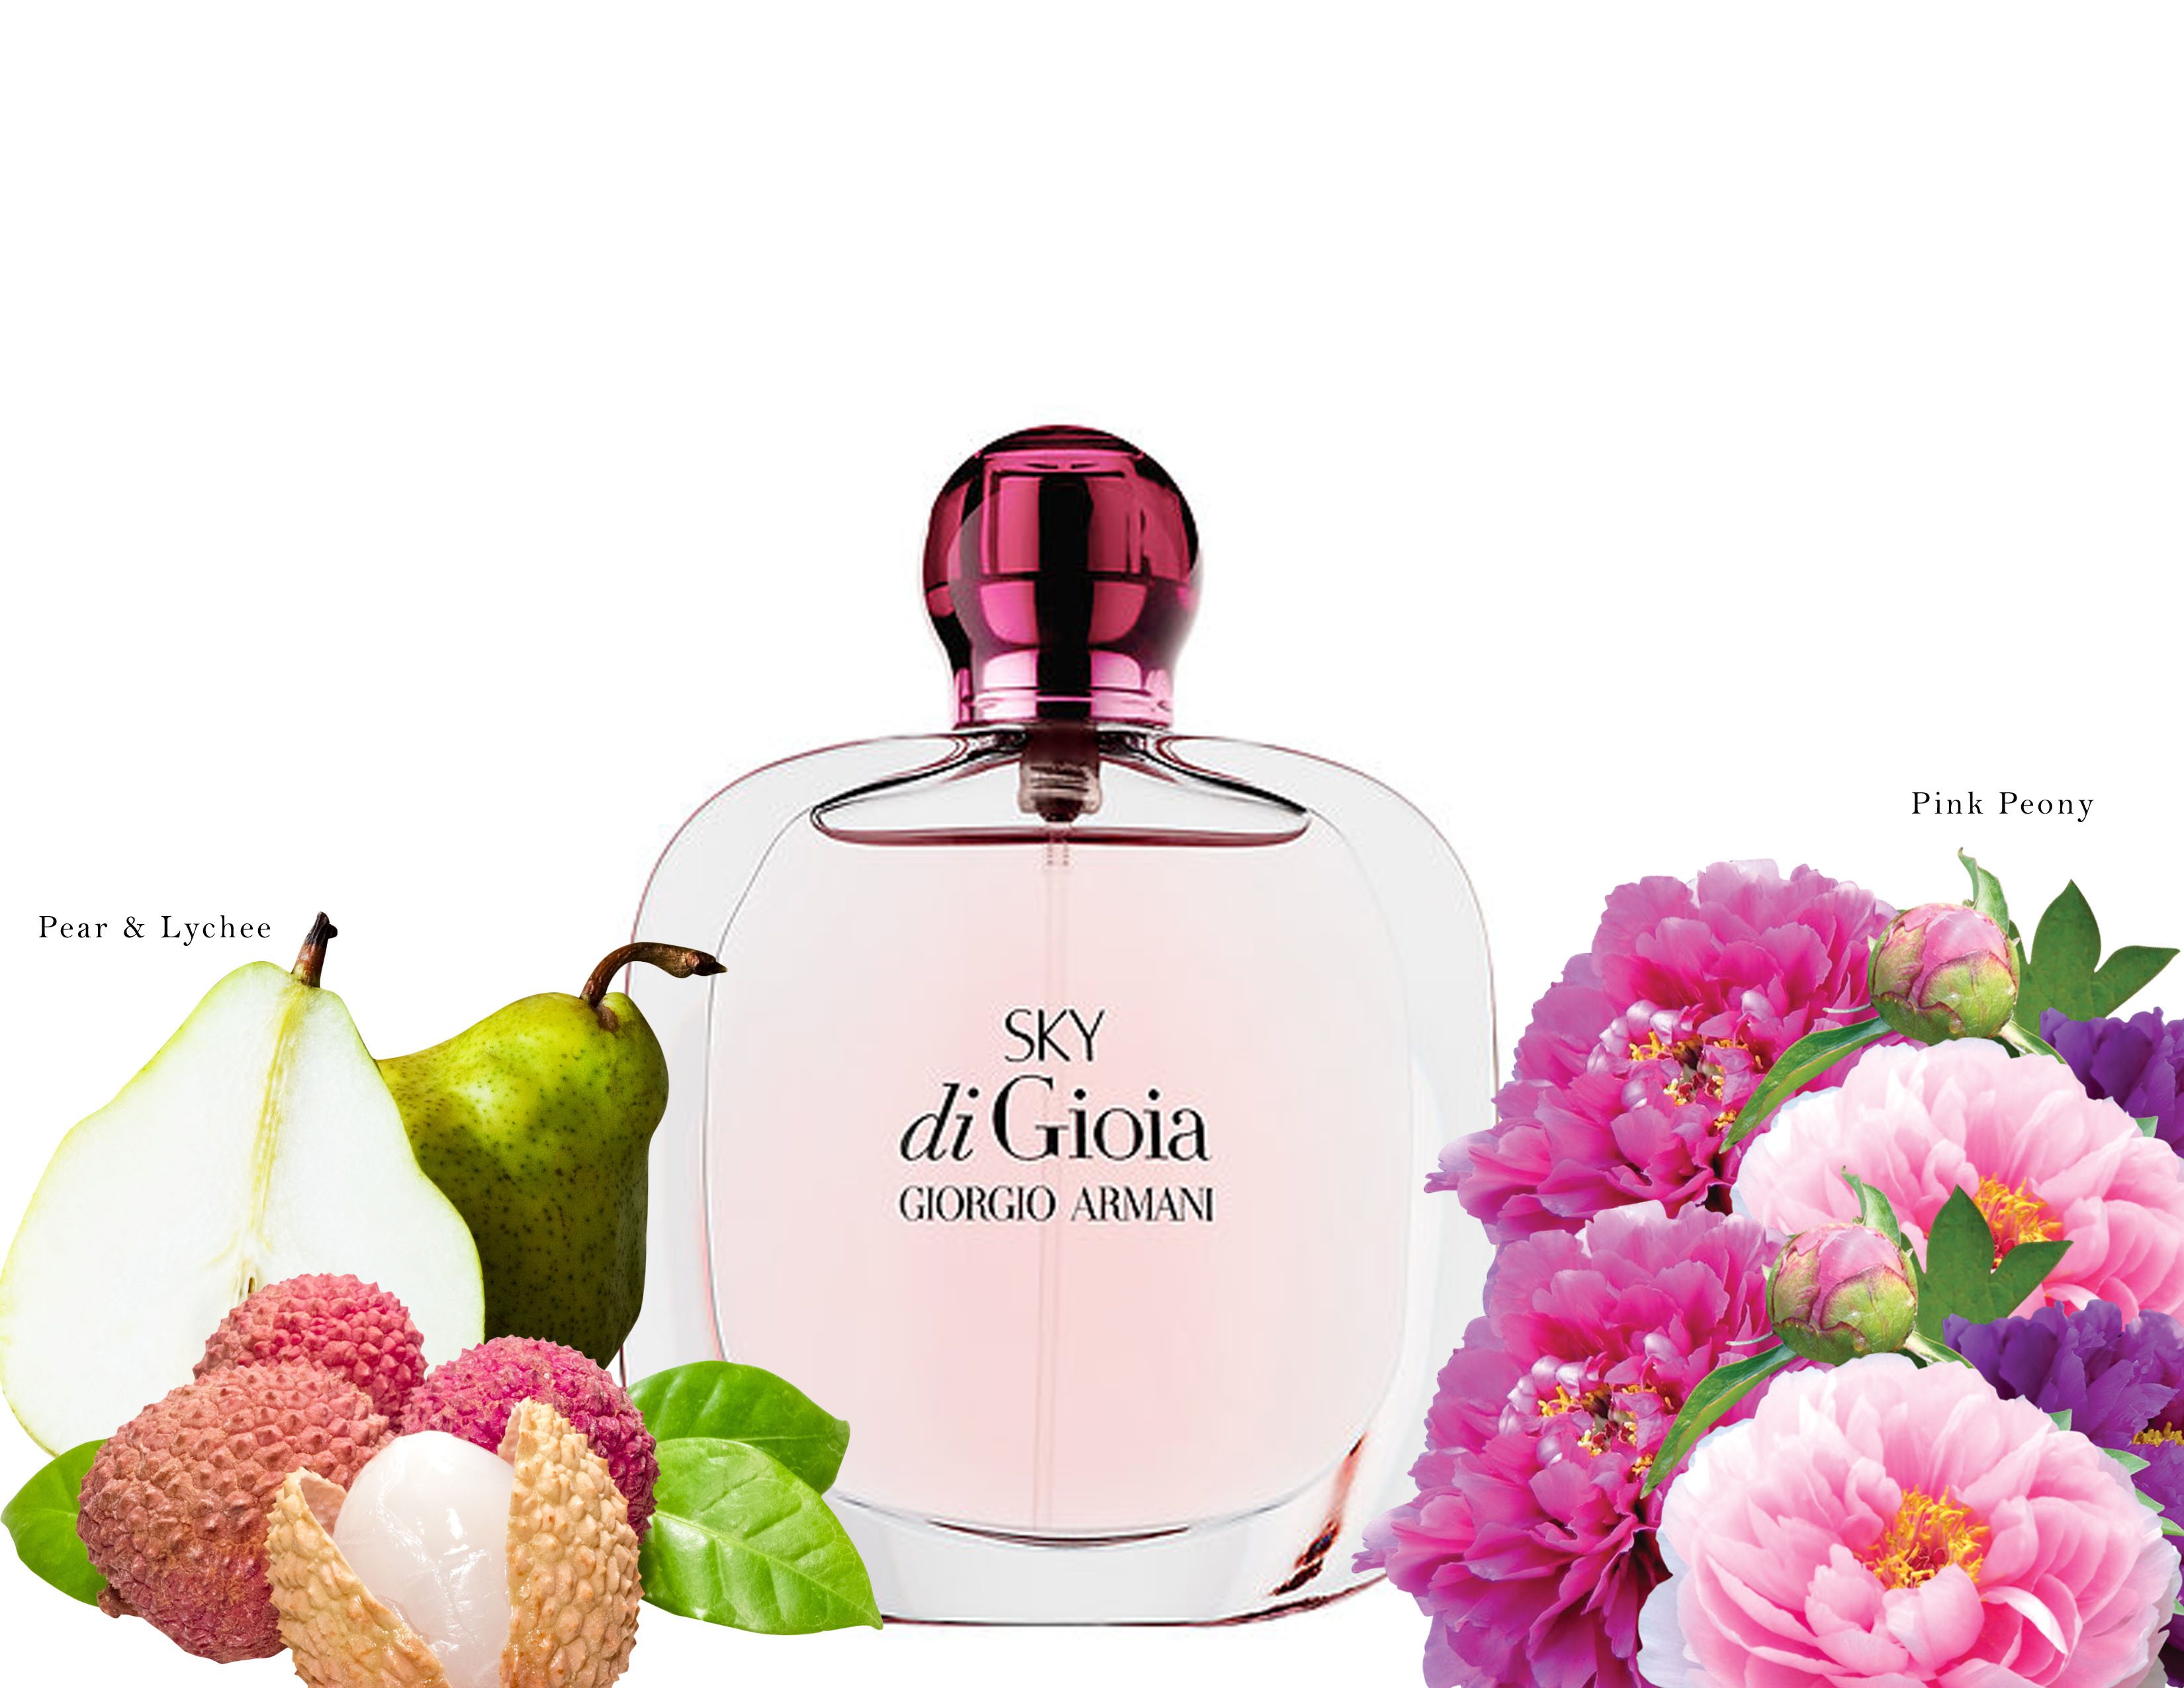 giorgio armani summer perfume